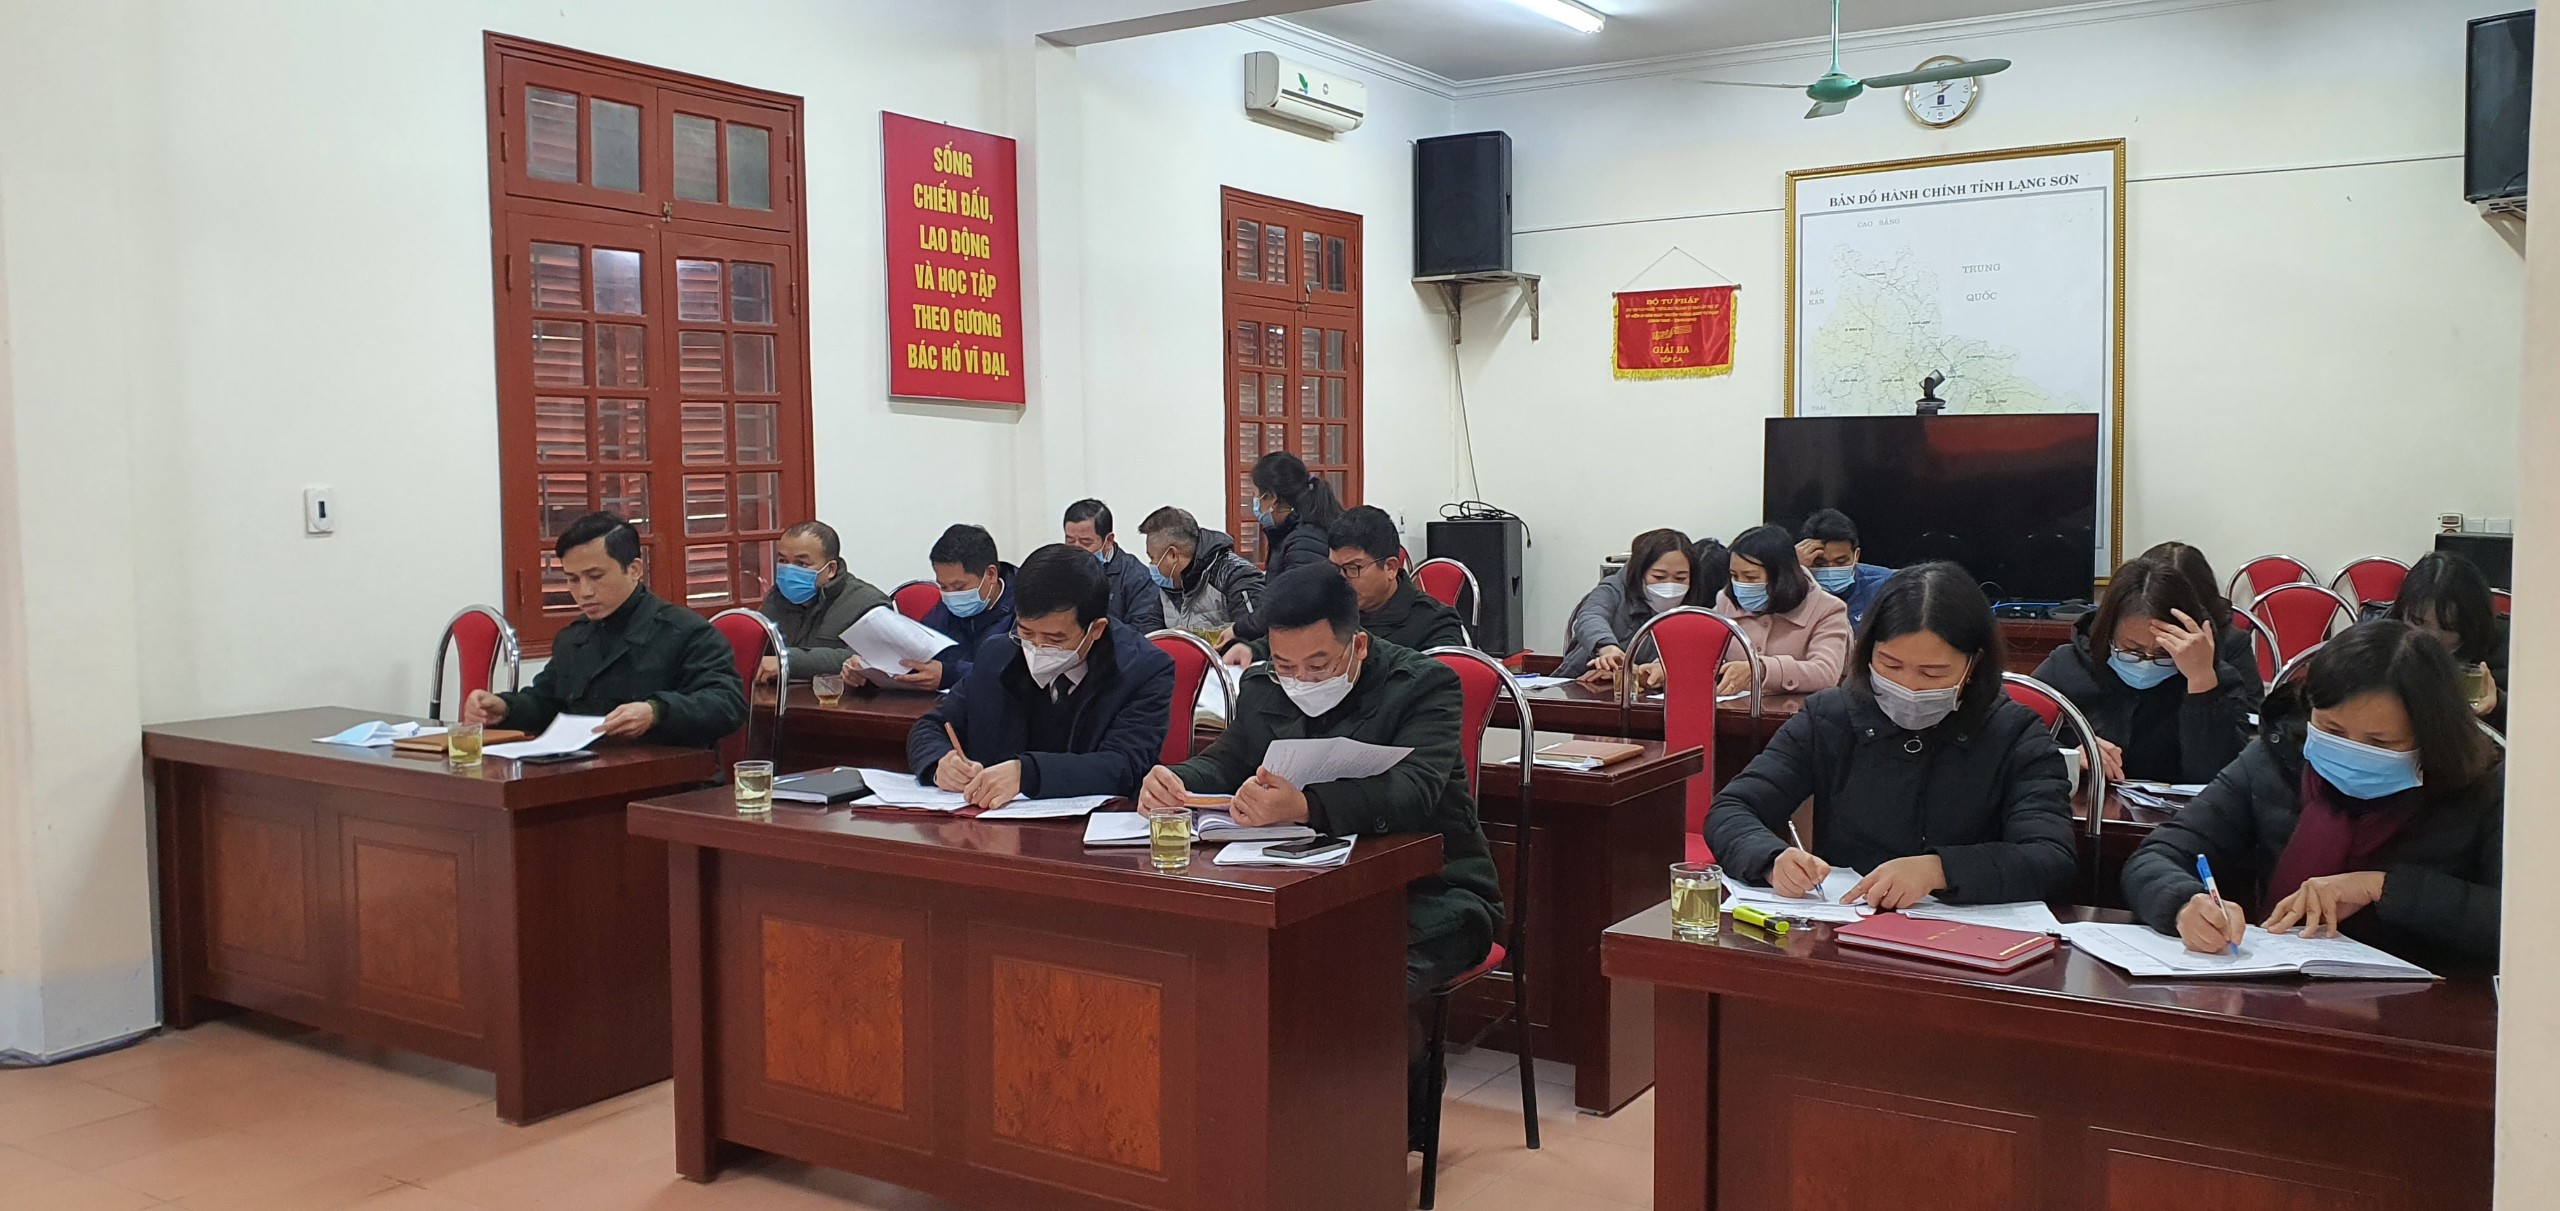 Cục Thi hành án dân sự tỉnh Lạng Sơn tổ chức Hội nghị công chức, người lao động năm 2021